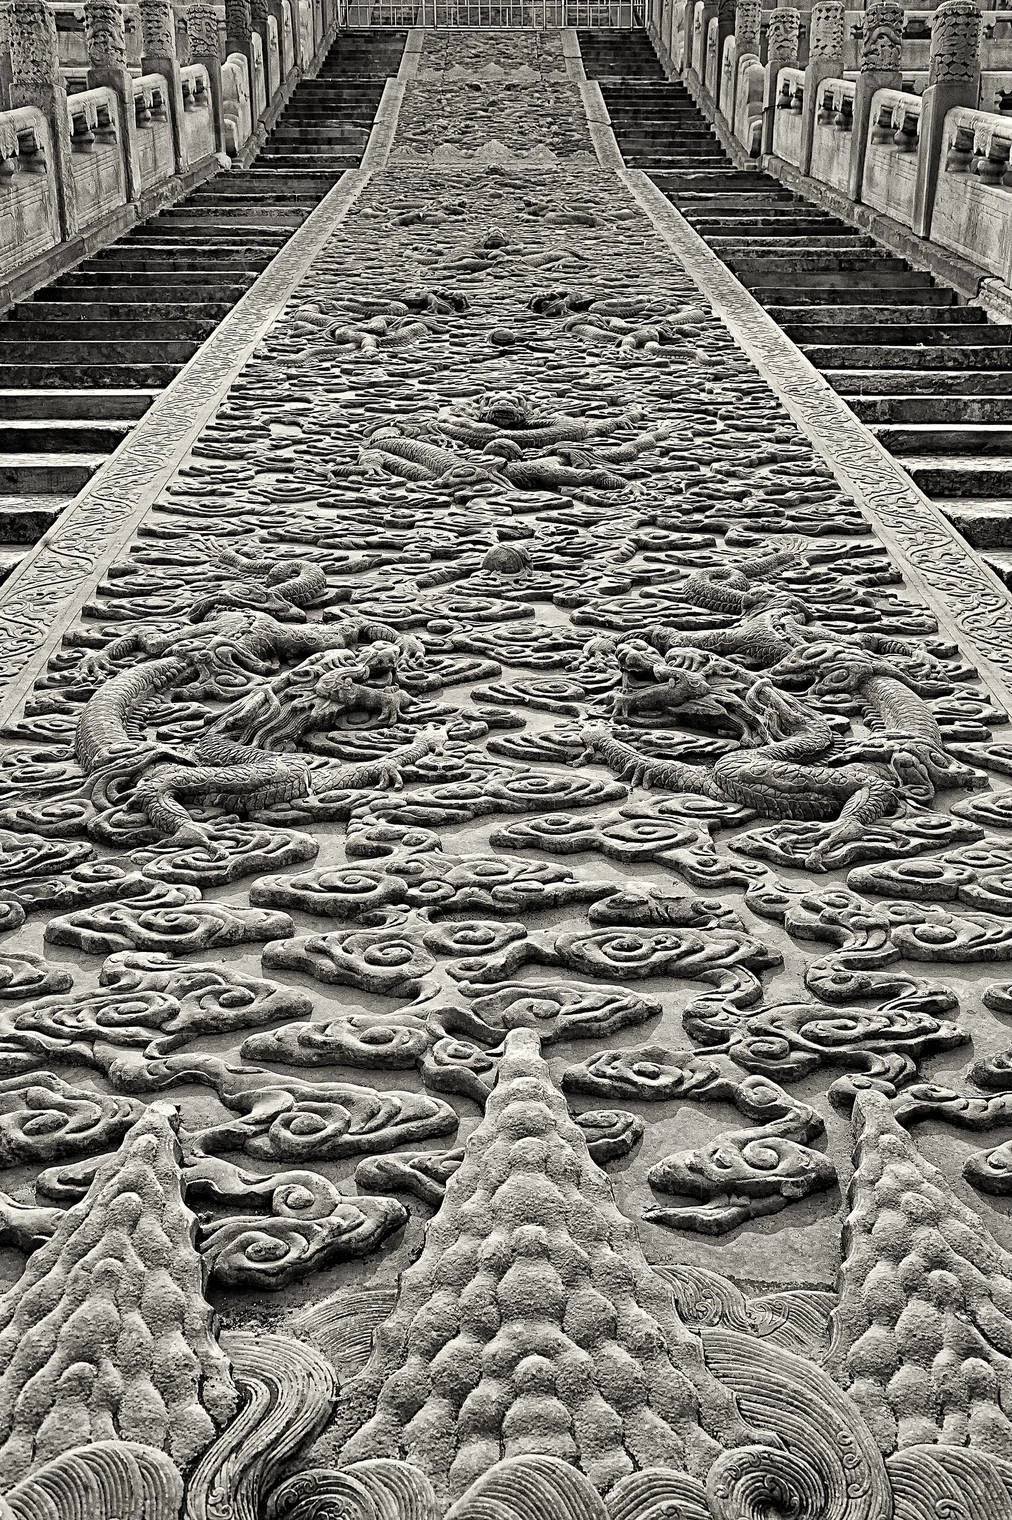 one piece marble stairway ramp, forbidden city